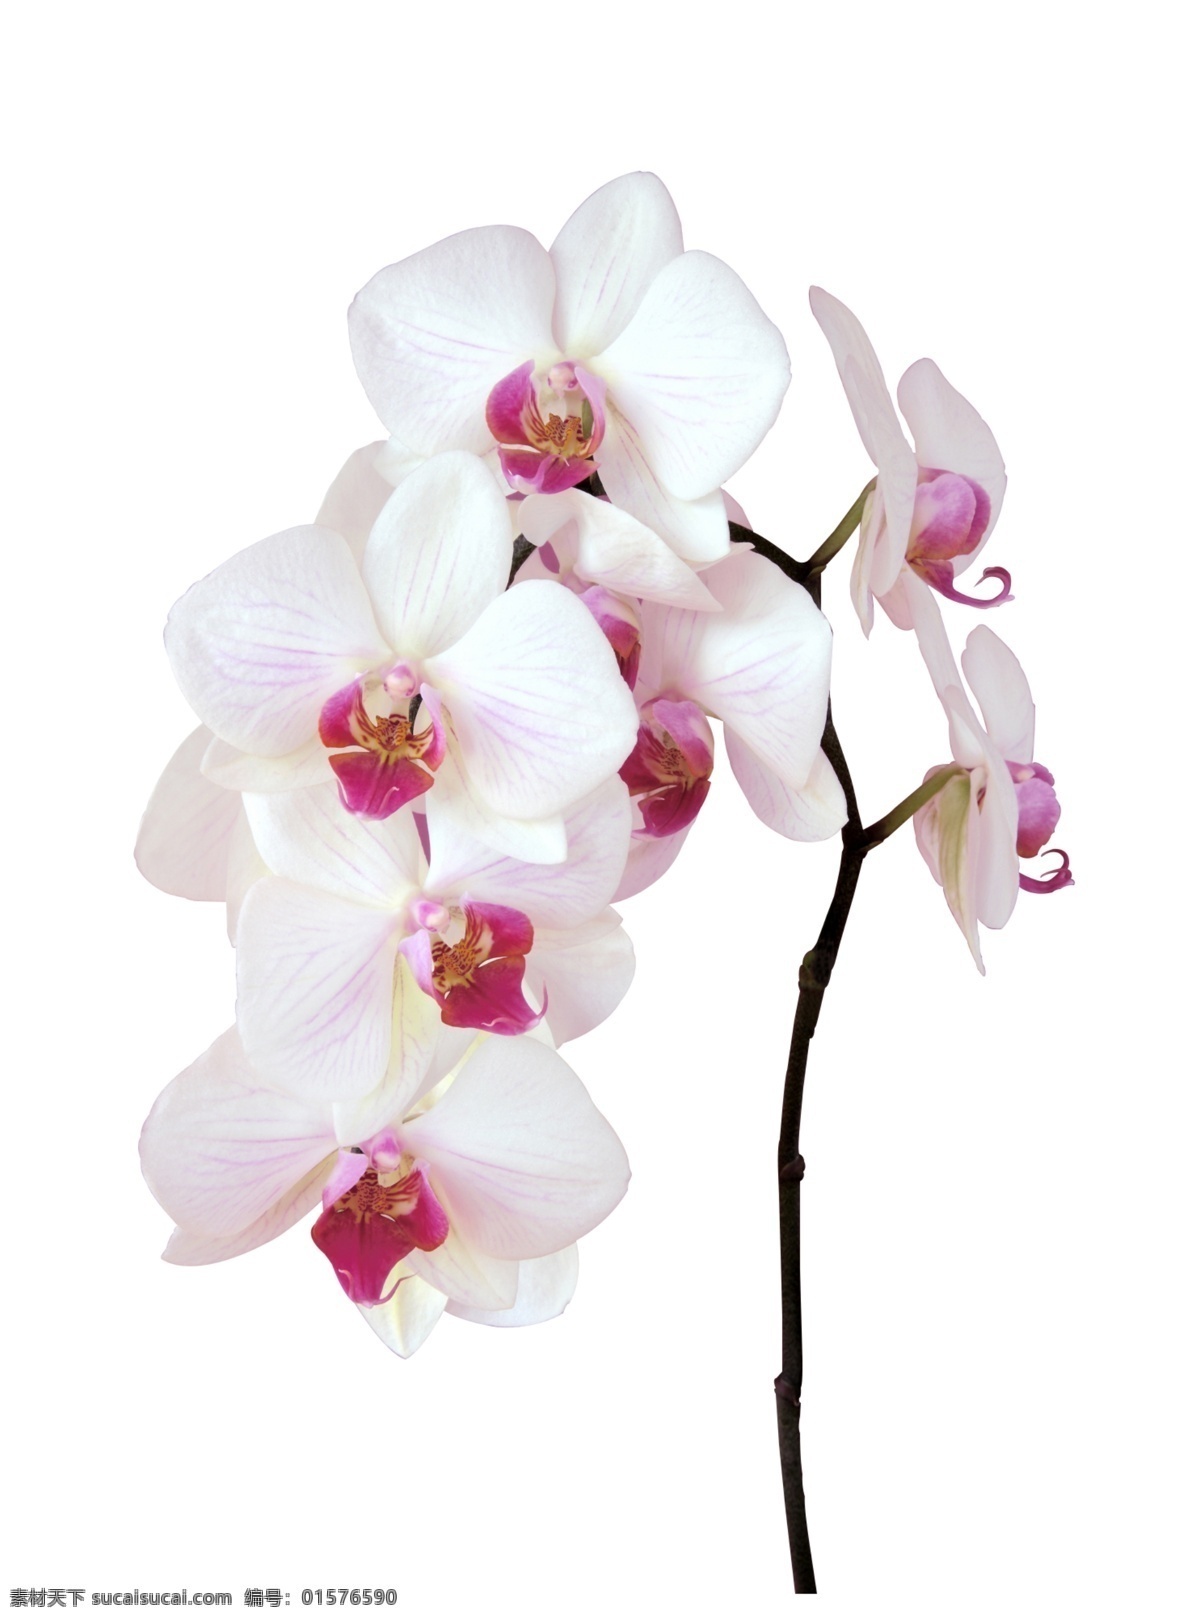 蝴蝶兰花朵 flower 花朵素材 白蝴蝶兰 花朵抠图 白色花朵